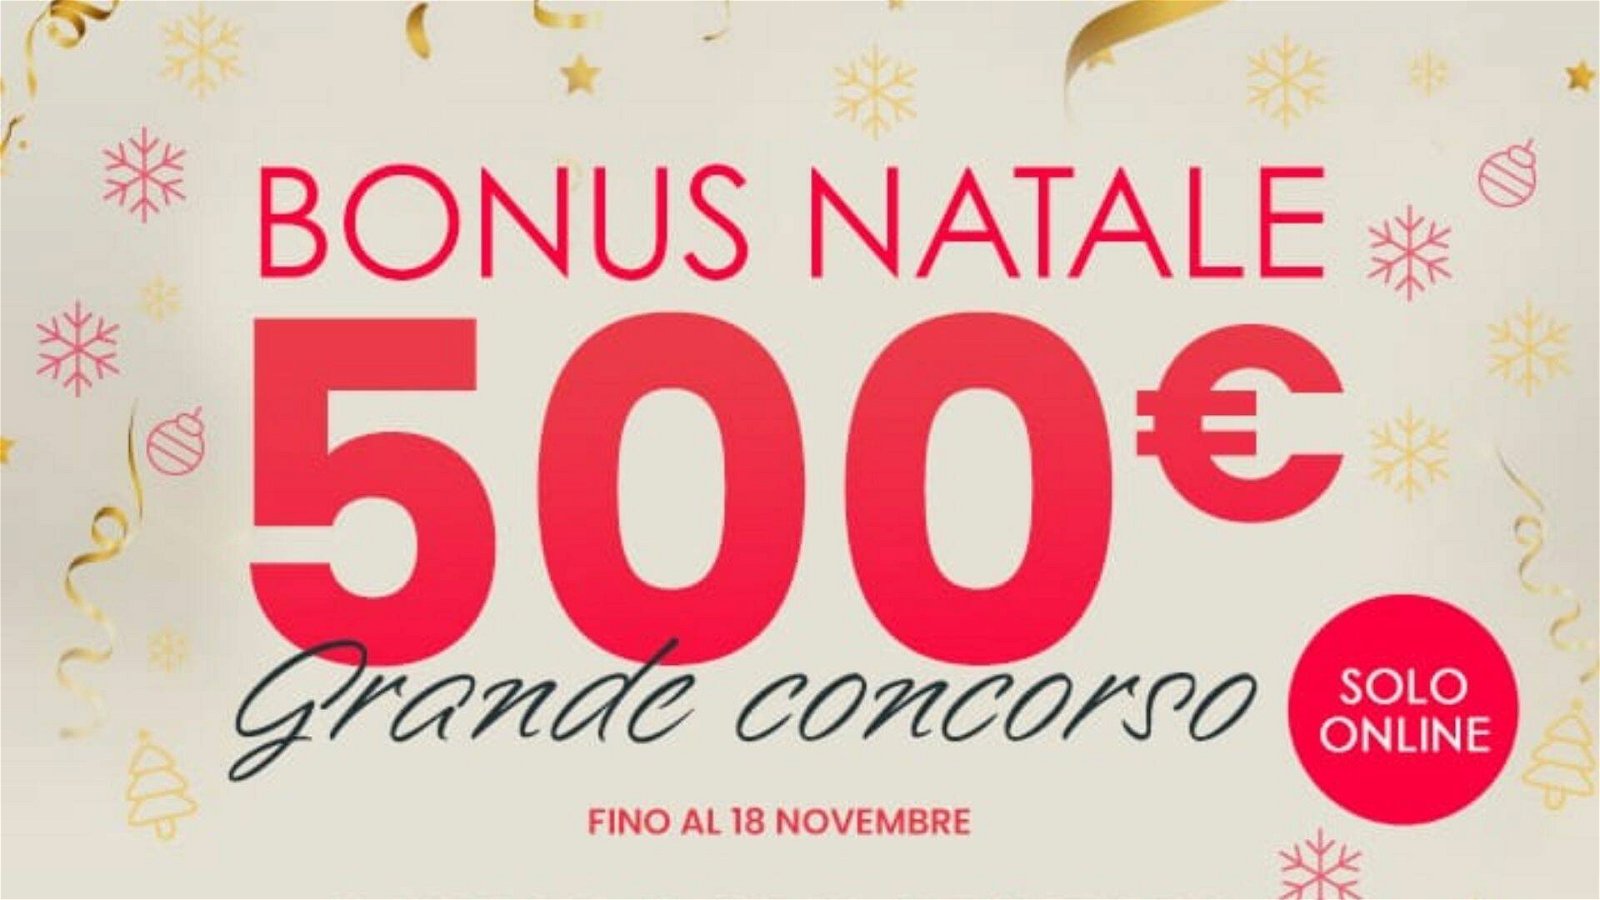 Immagine di Grande concorso LaFeltrinelli: acquista online e vinci buoni regalo da 500€!